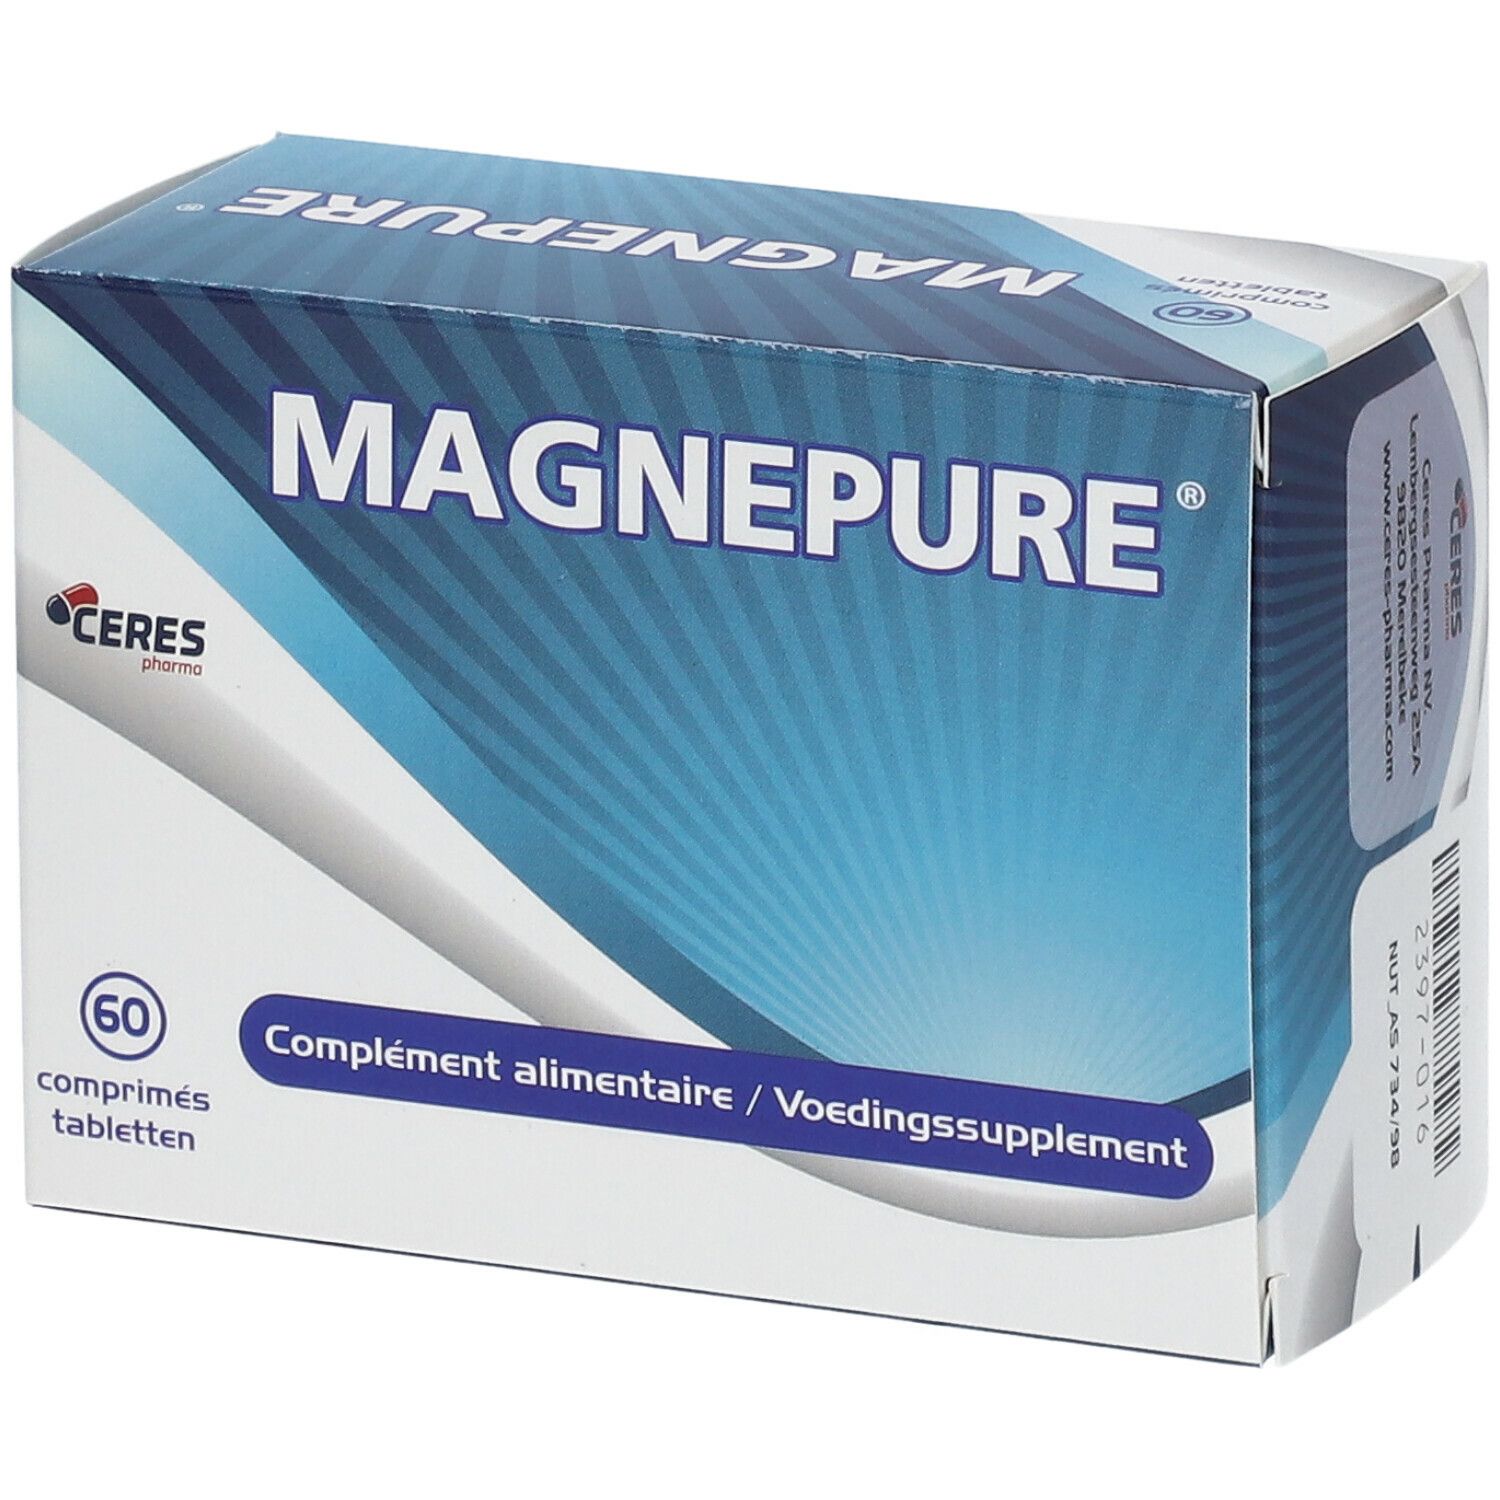 Magnepure®